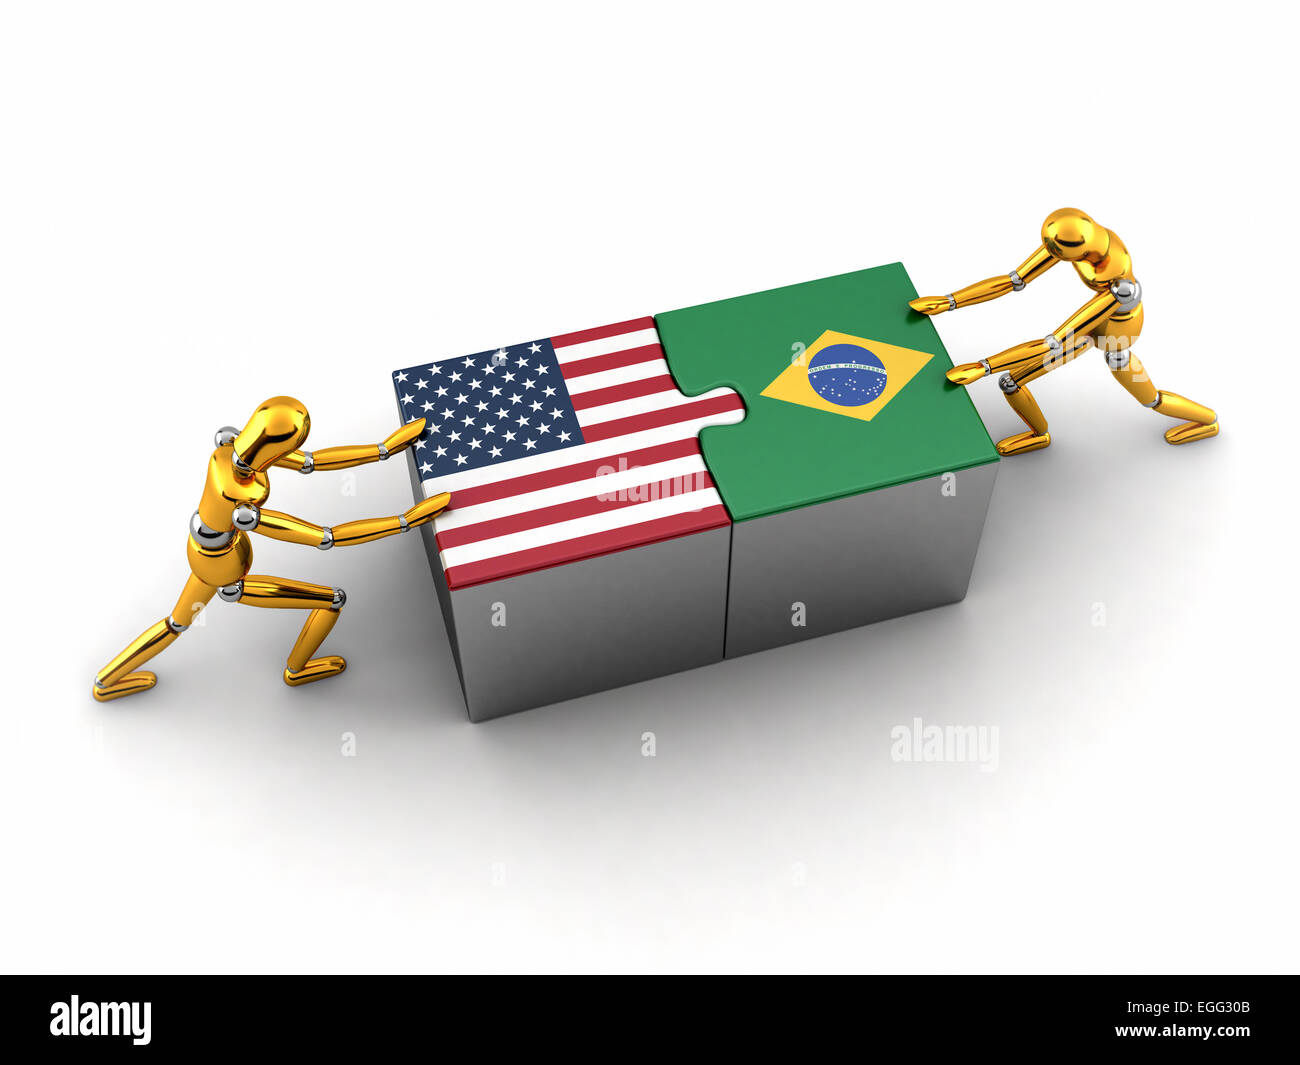 Politica finanziaria o il concetto di Stati Uniti d'America lottando e trovare una soluzione con il Brasile. Foto Stock